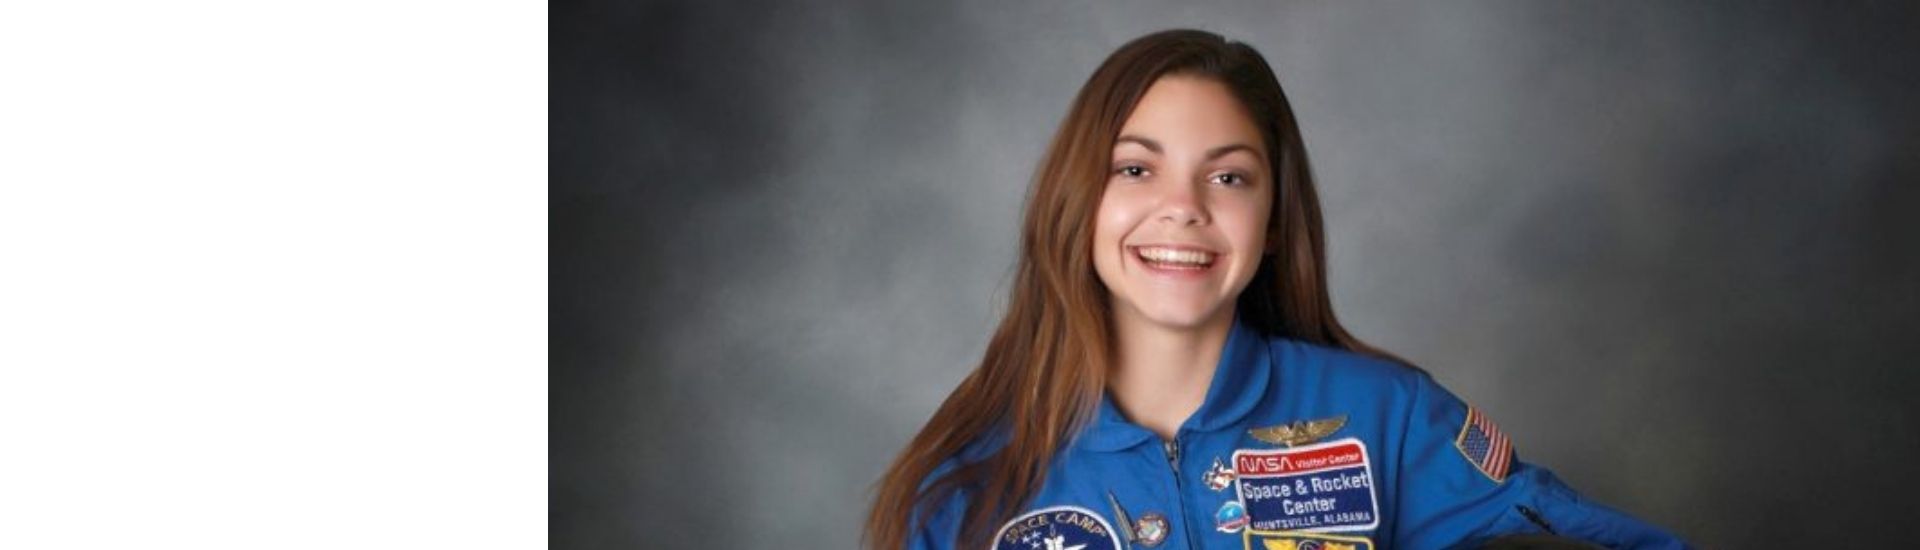 Alyssa Carson, la mujer más joven que podría llegar a Marte